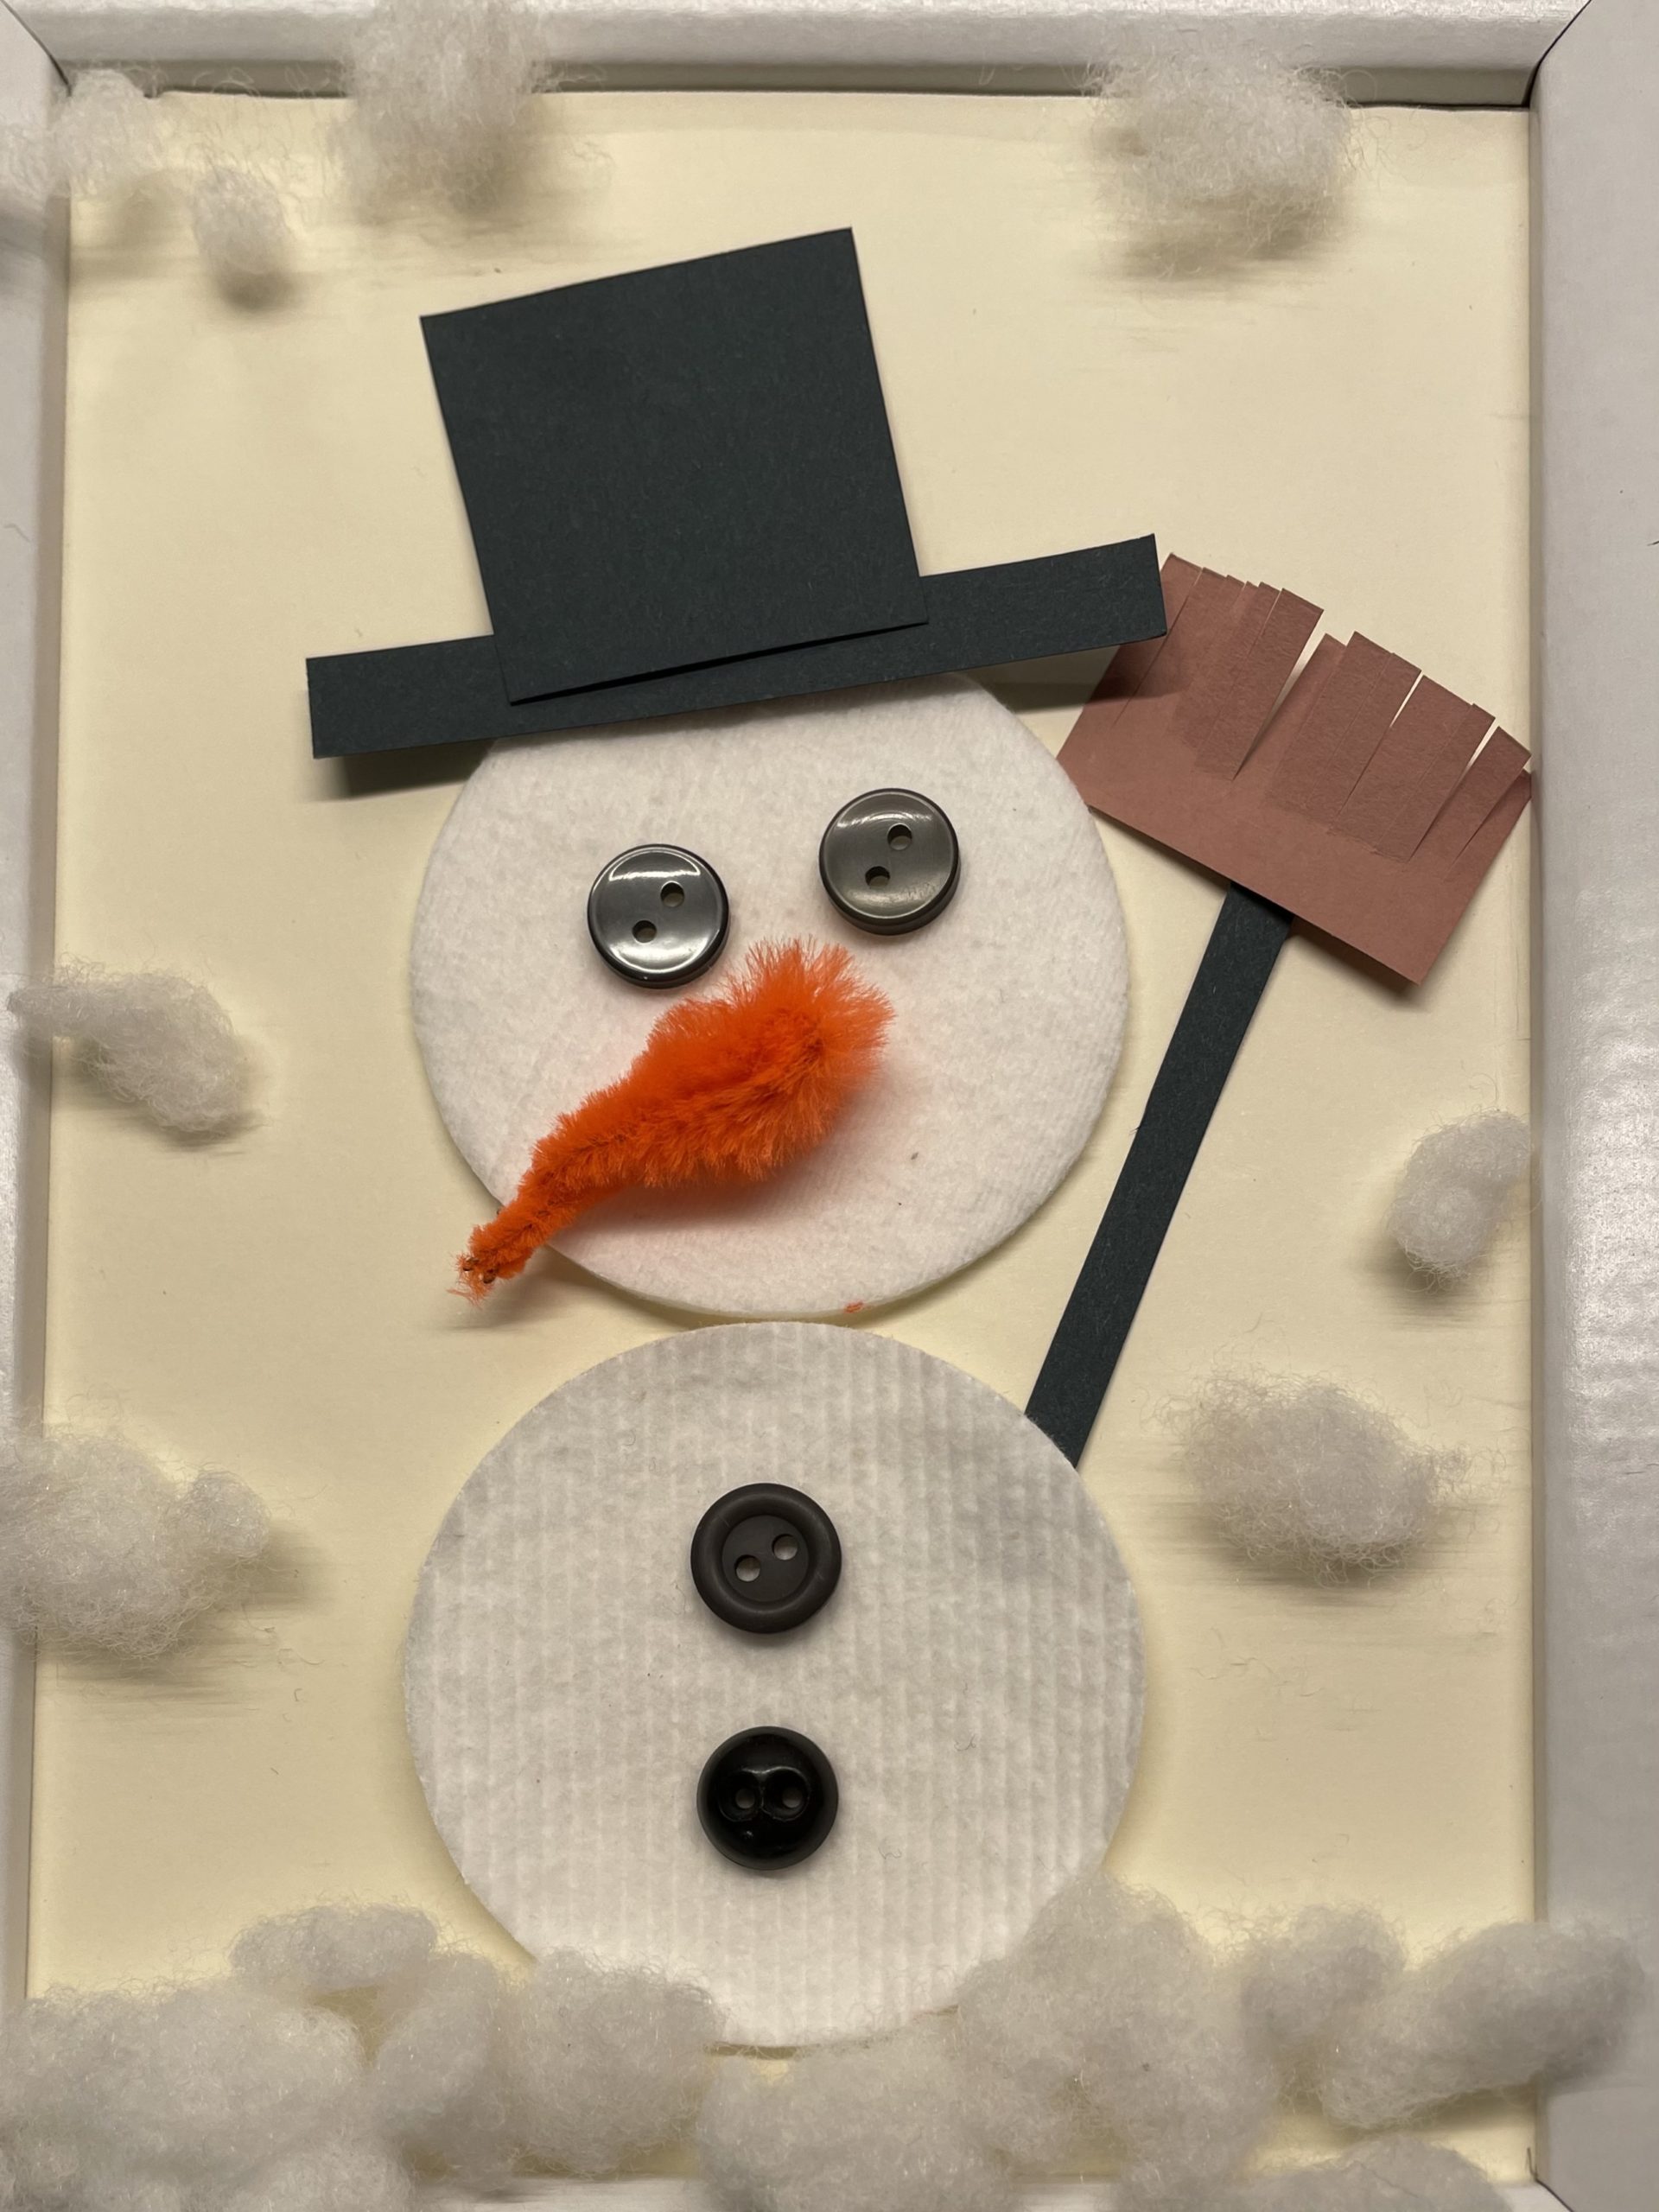 Bild zum Schritt 22 für das Bastel- und DIY-Abenteuer für Kinder: 'Fügt nun Hut, Besen und Karotten-Nase als Schneemann zusammen.'